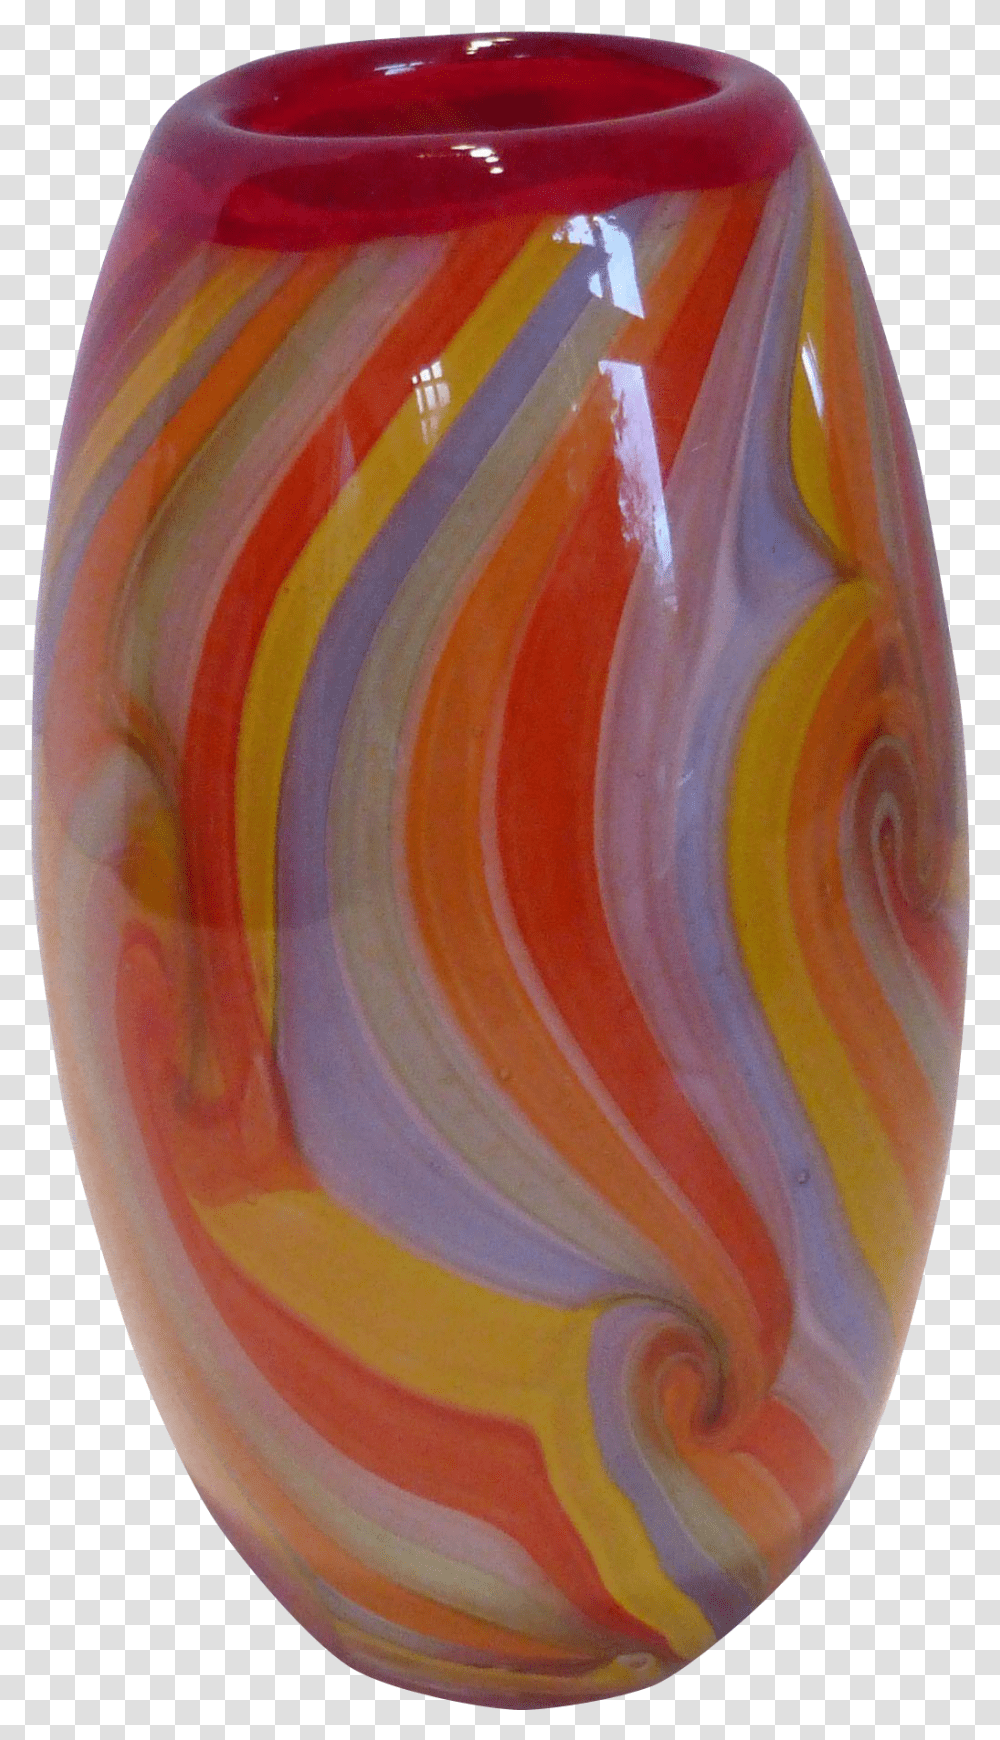 Vase, Pottery, Egg, Food, Jar Transparent Png